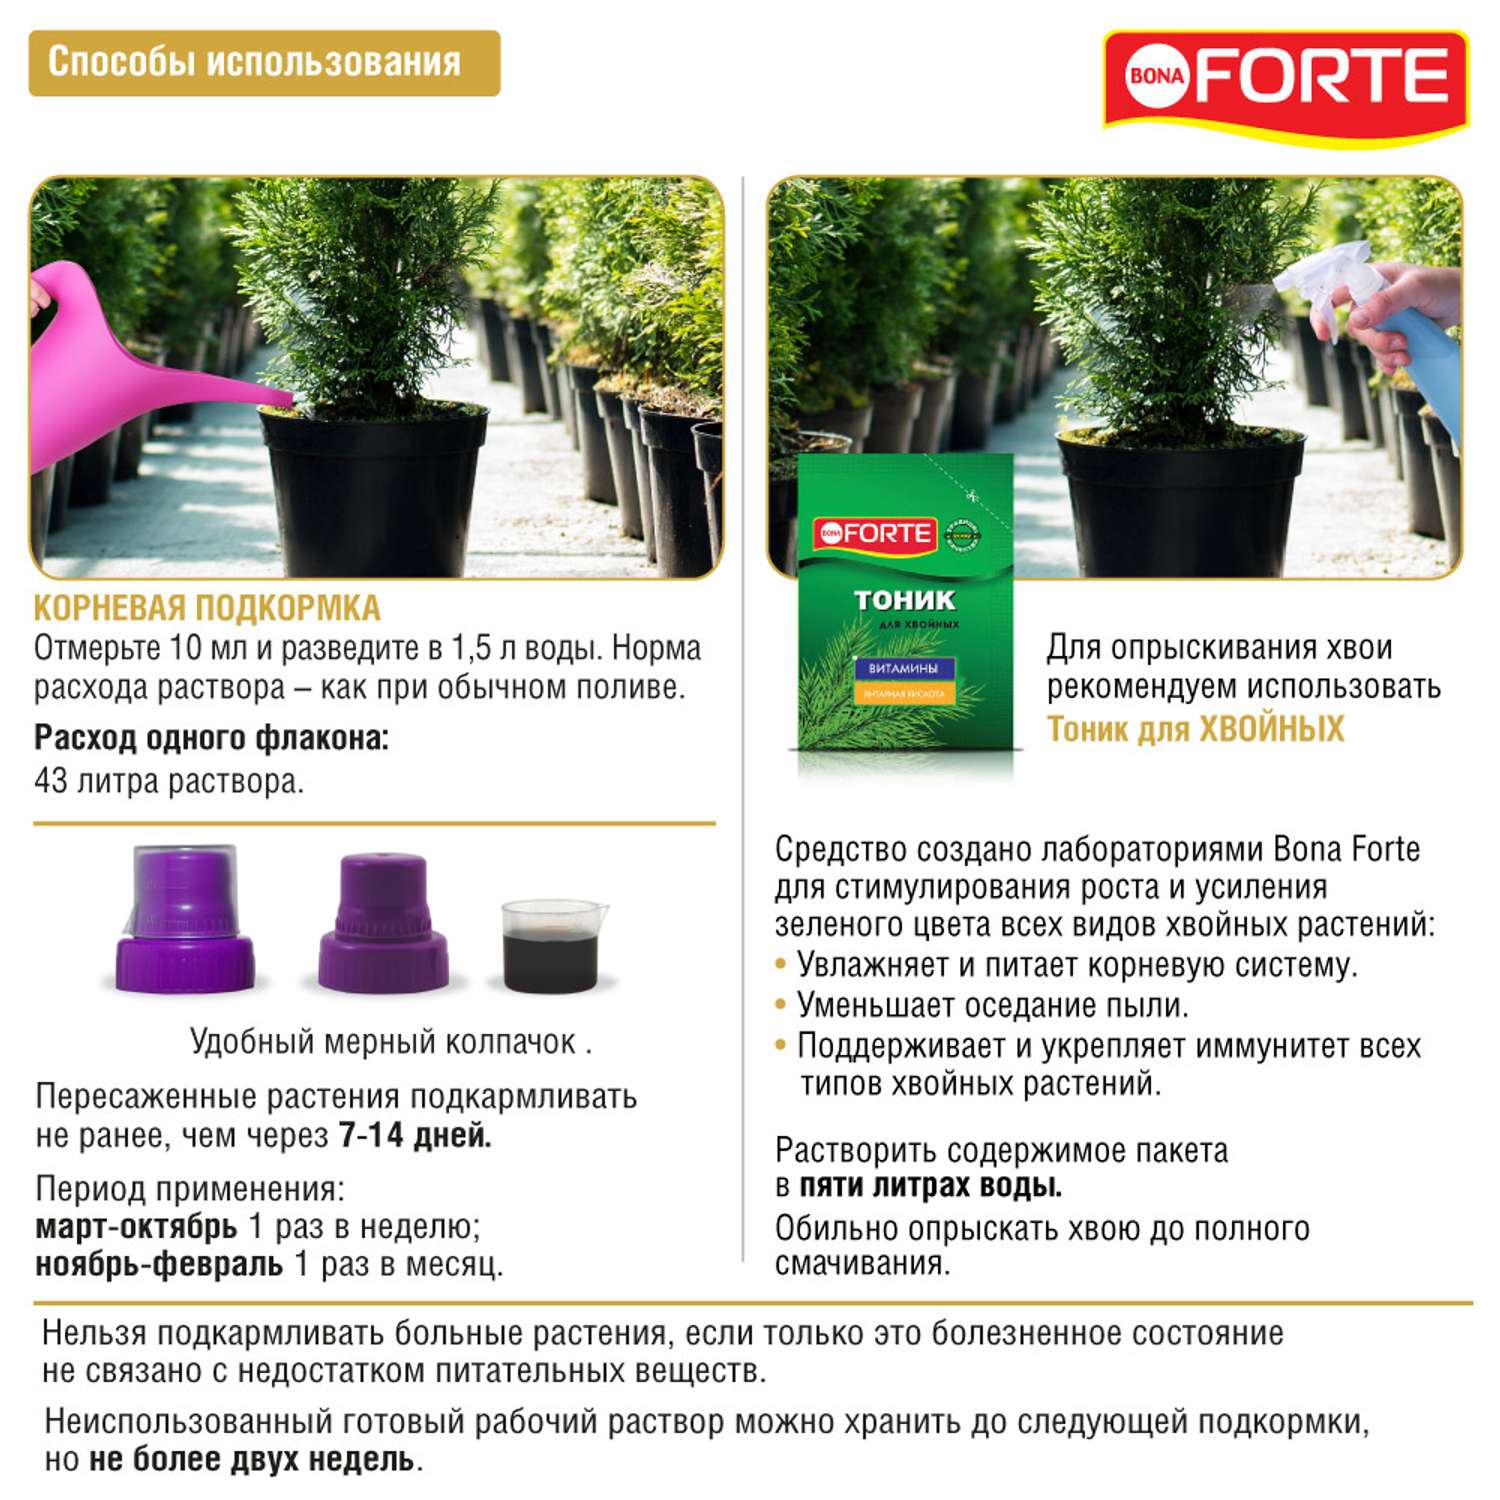 Жидкое удобрение Bona Forte Здоровье Для хвойных растений 285 мл - фото 6